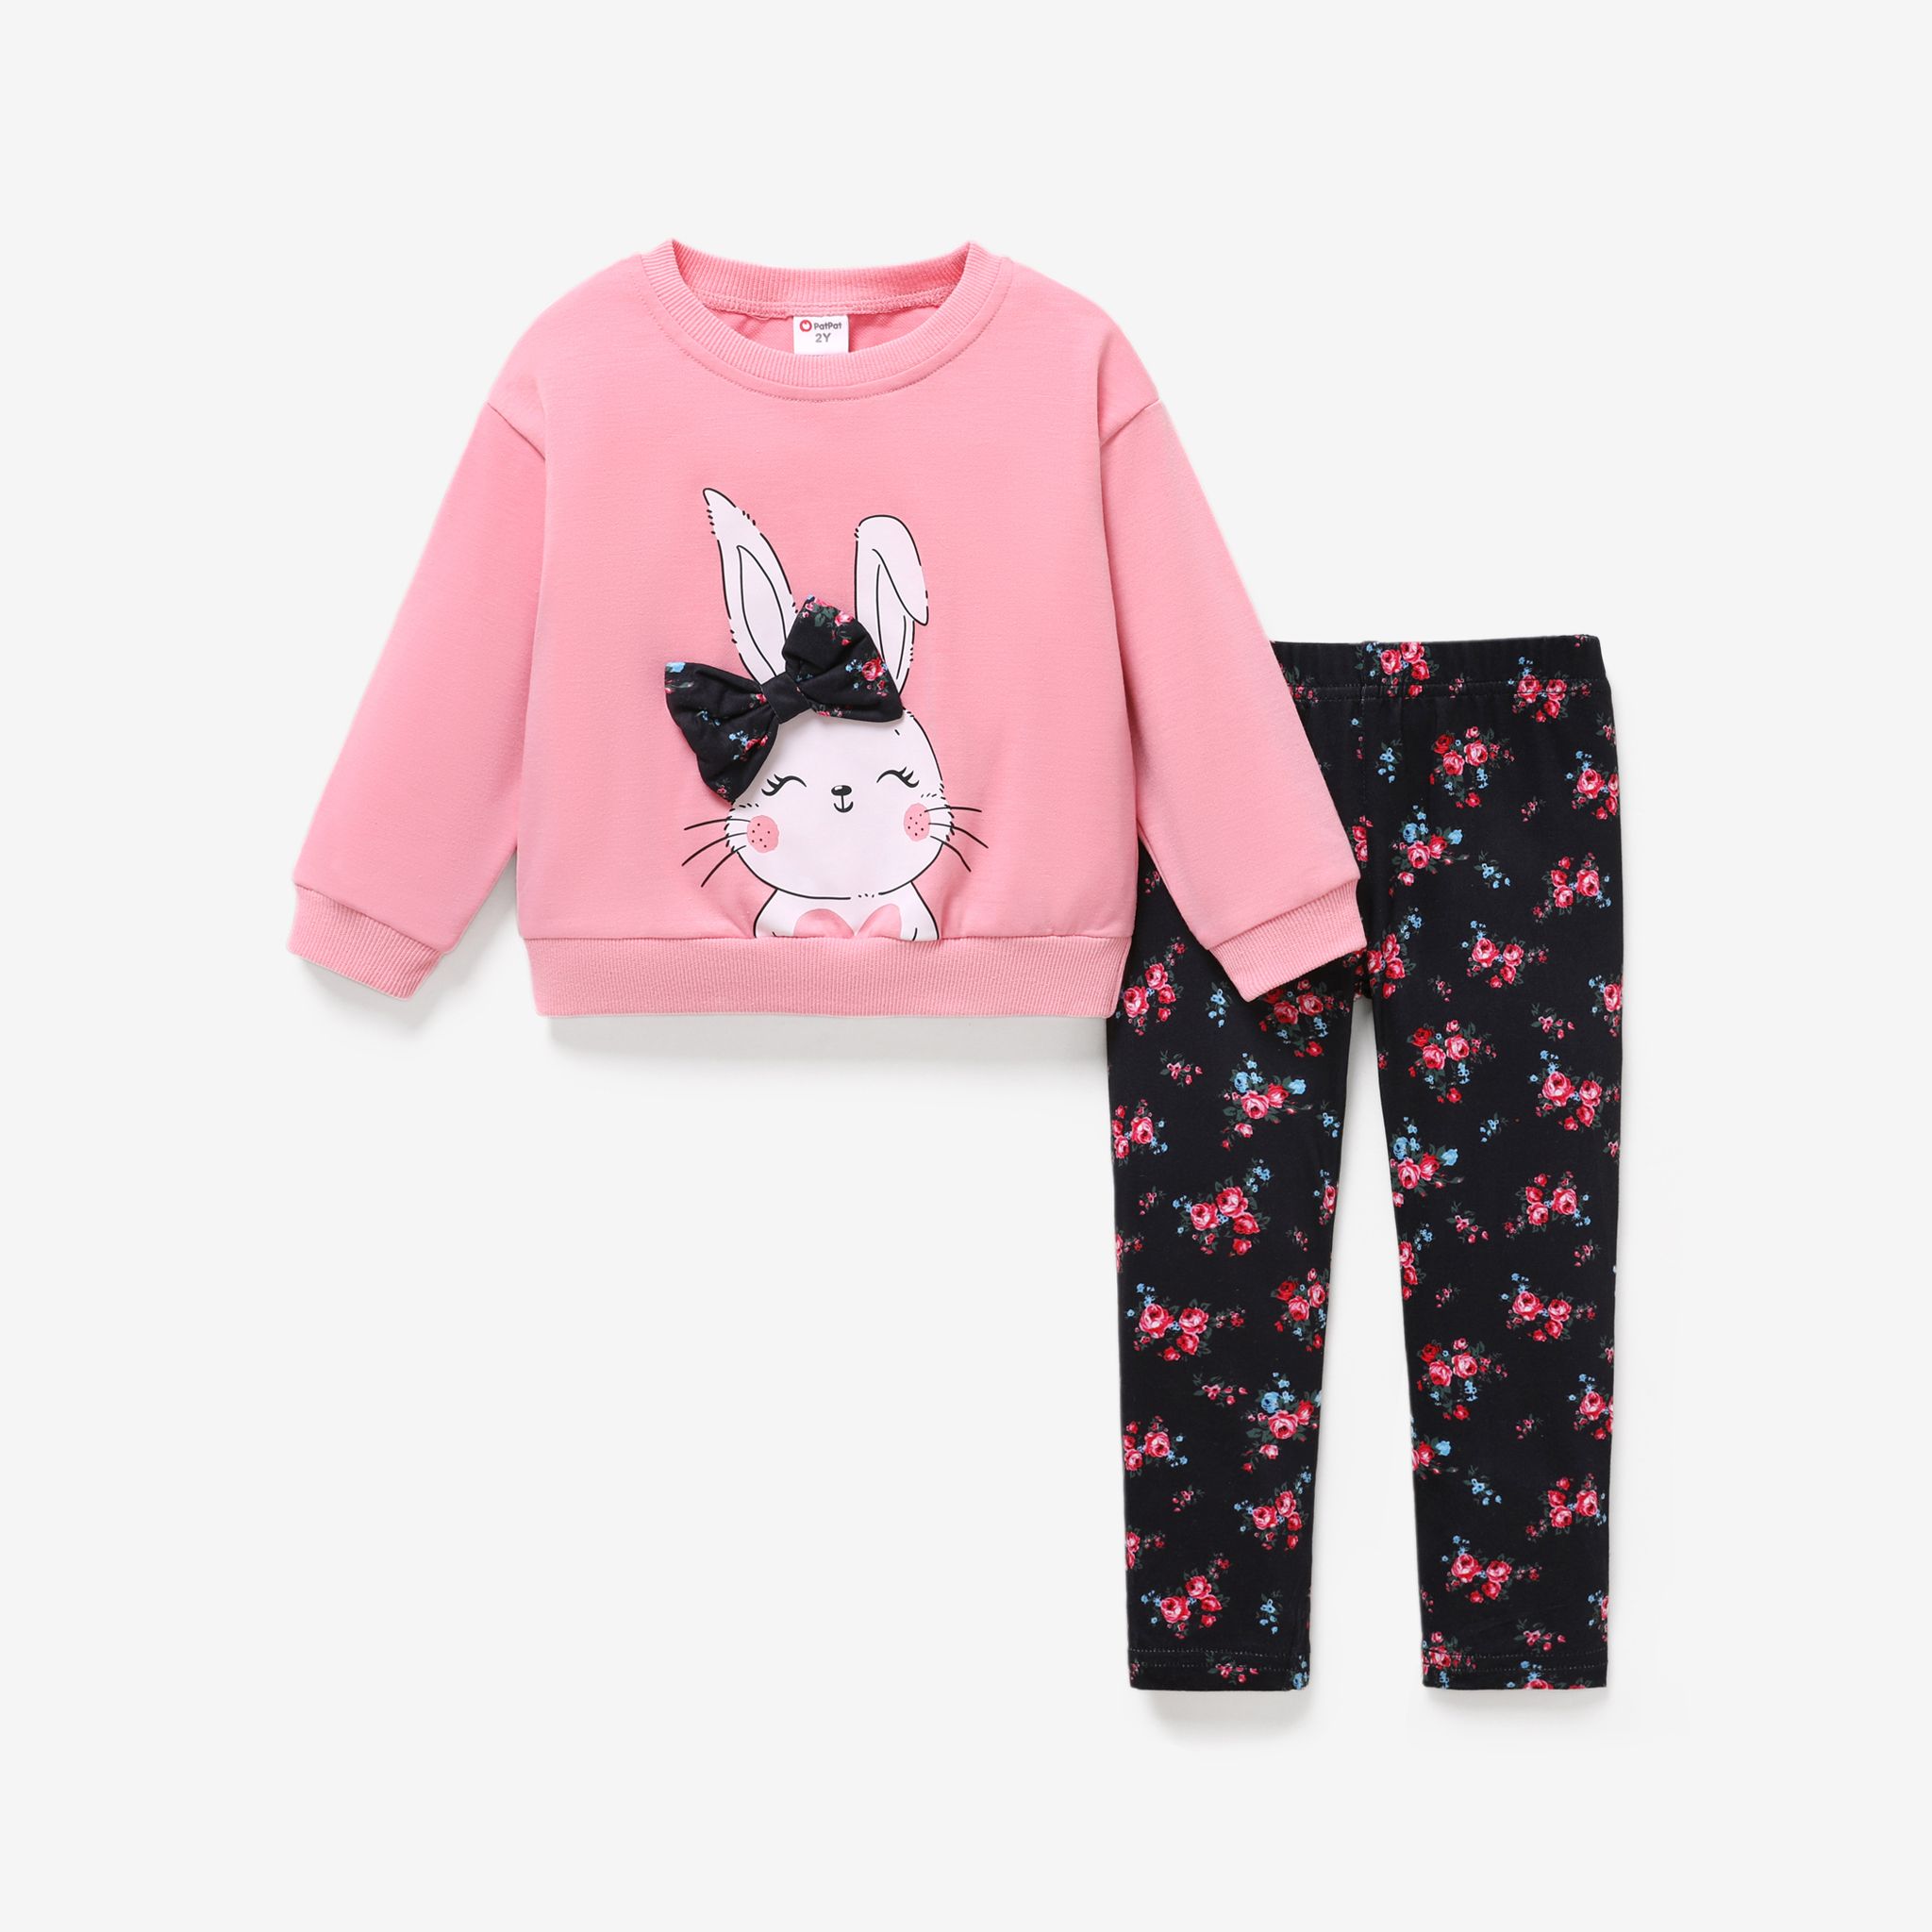 2pcs Toddler Girl Cute Rabbit Print Bowknot Design Sweatshirt And Floral Print Leggings Set